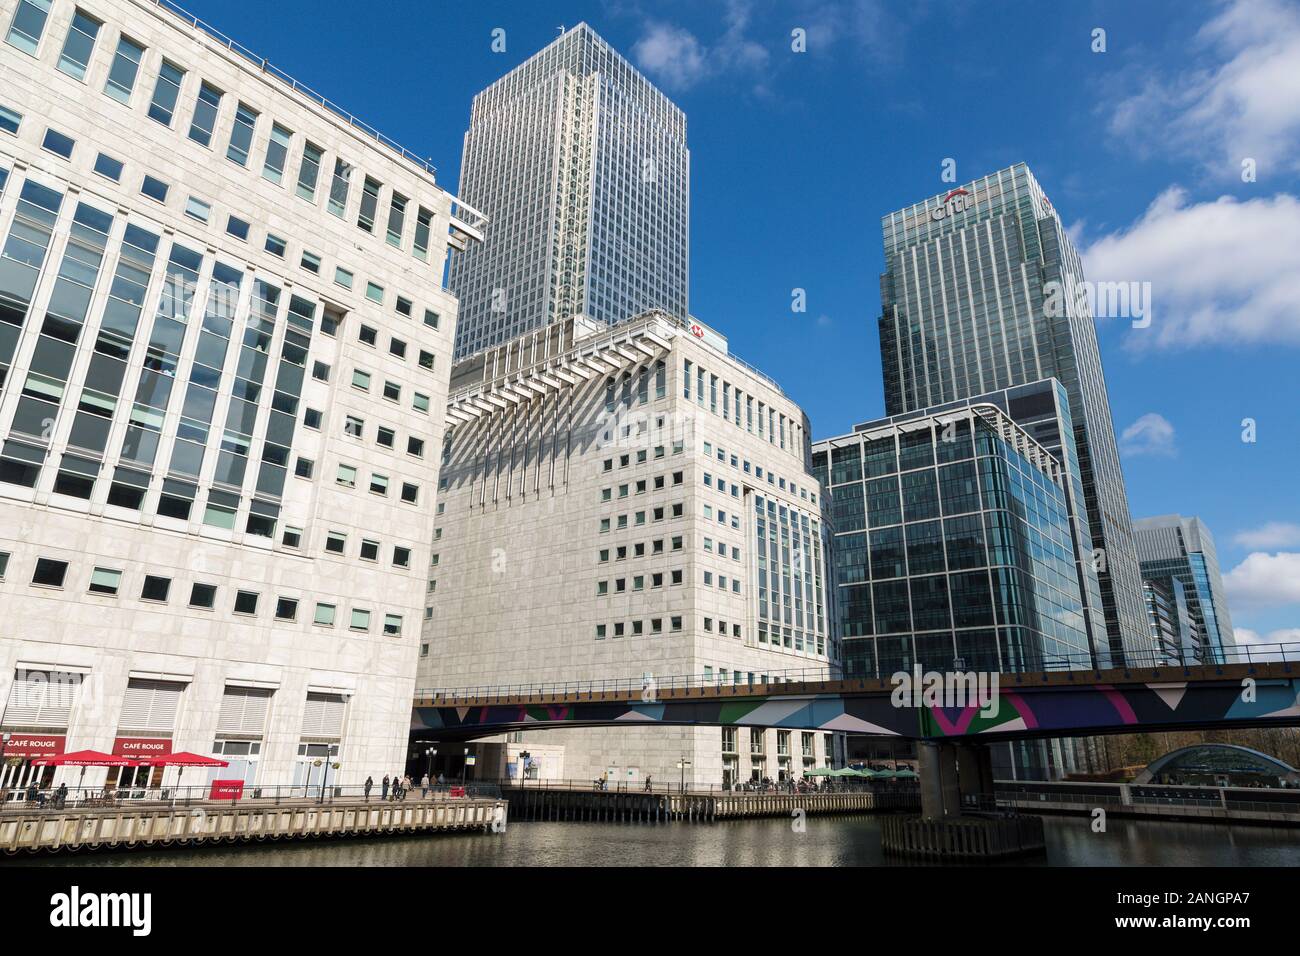 Les banques d'affaires de Canary Wharf, Londres, Angleterre Banque D'Images